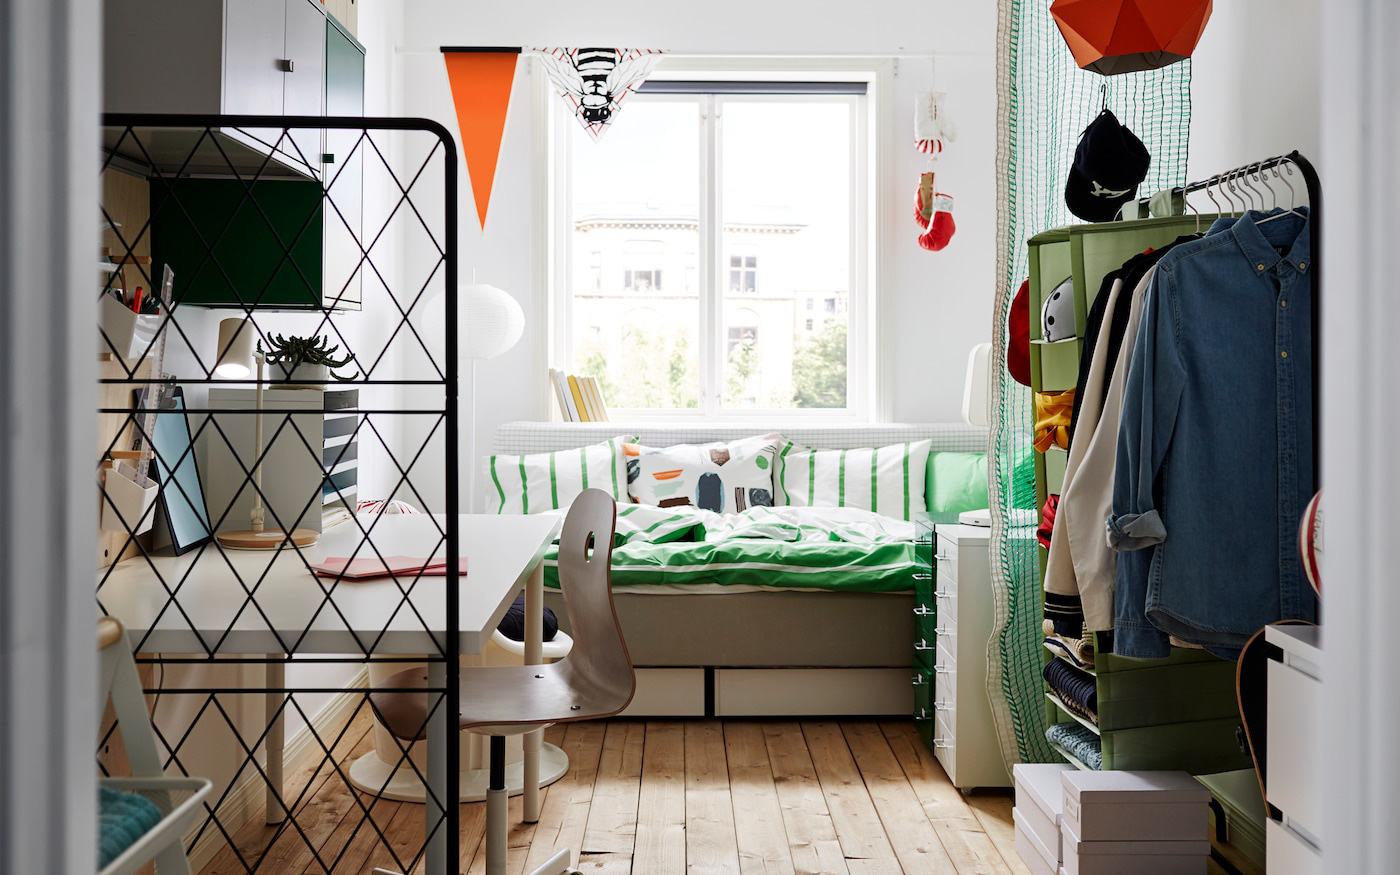 Ý tưởng bố trí nội thất "siêu chuẩn" cho các căn phòng nhỏ với chi phí tiết kiệm